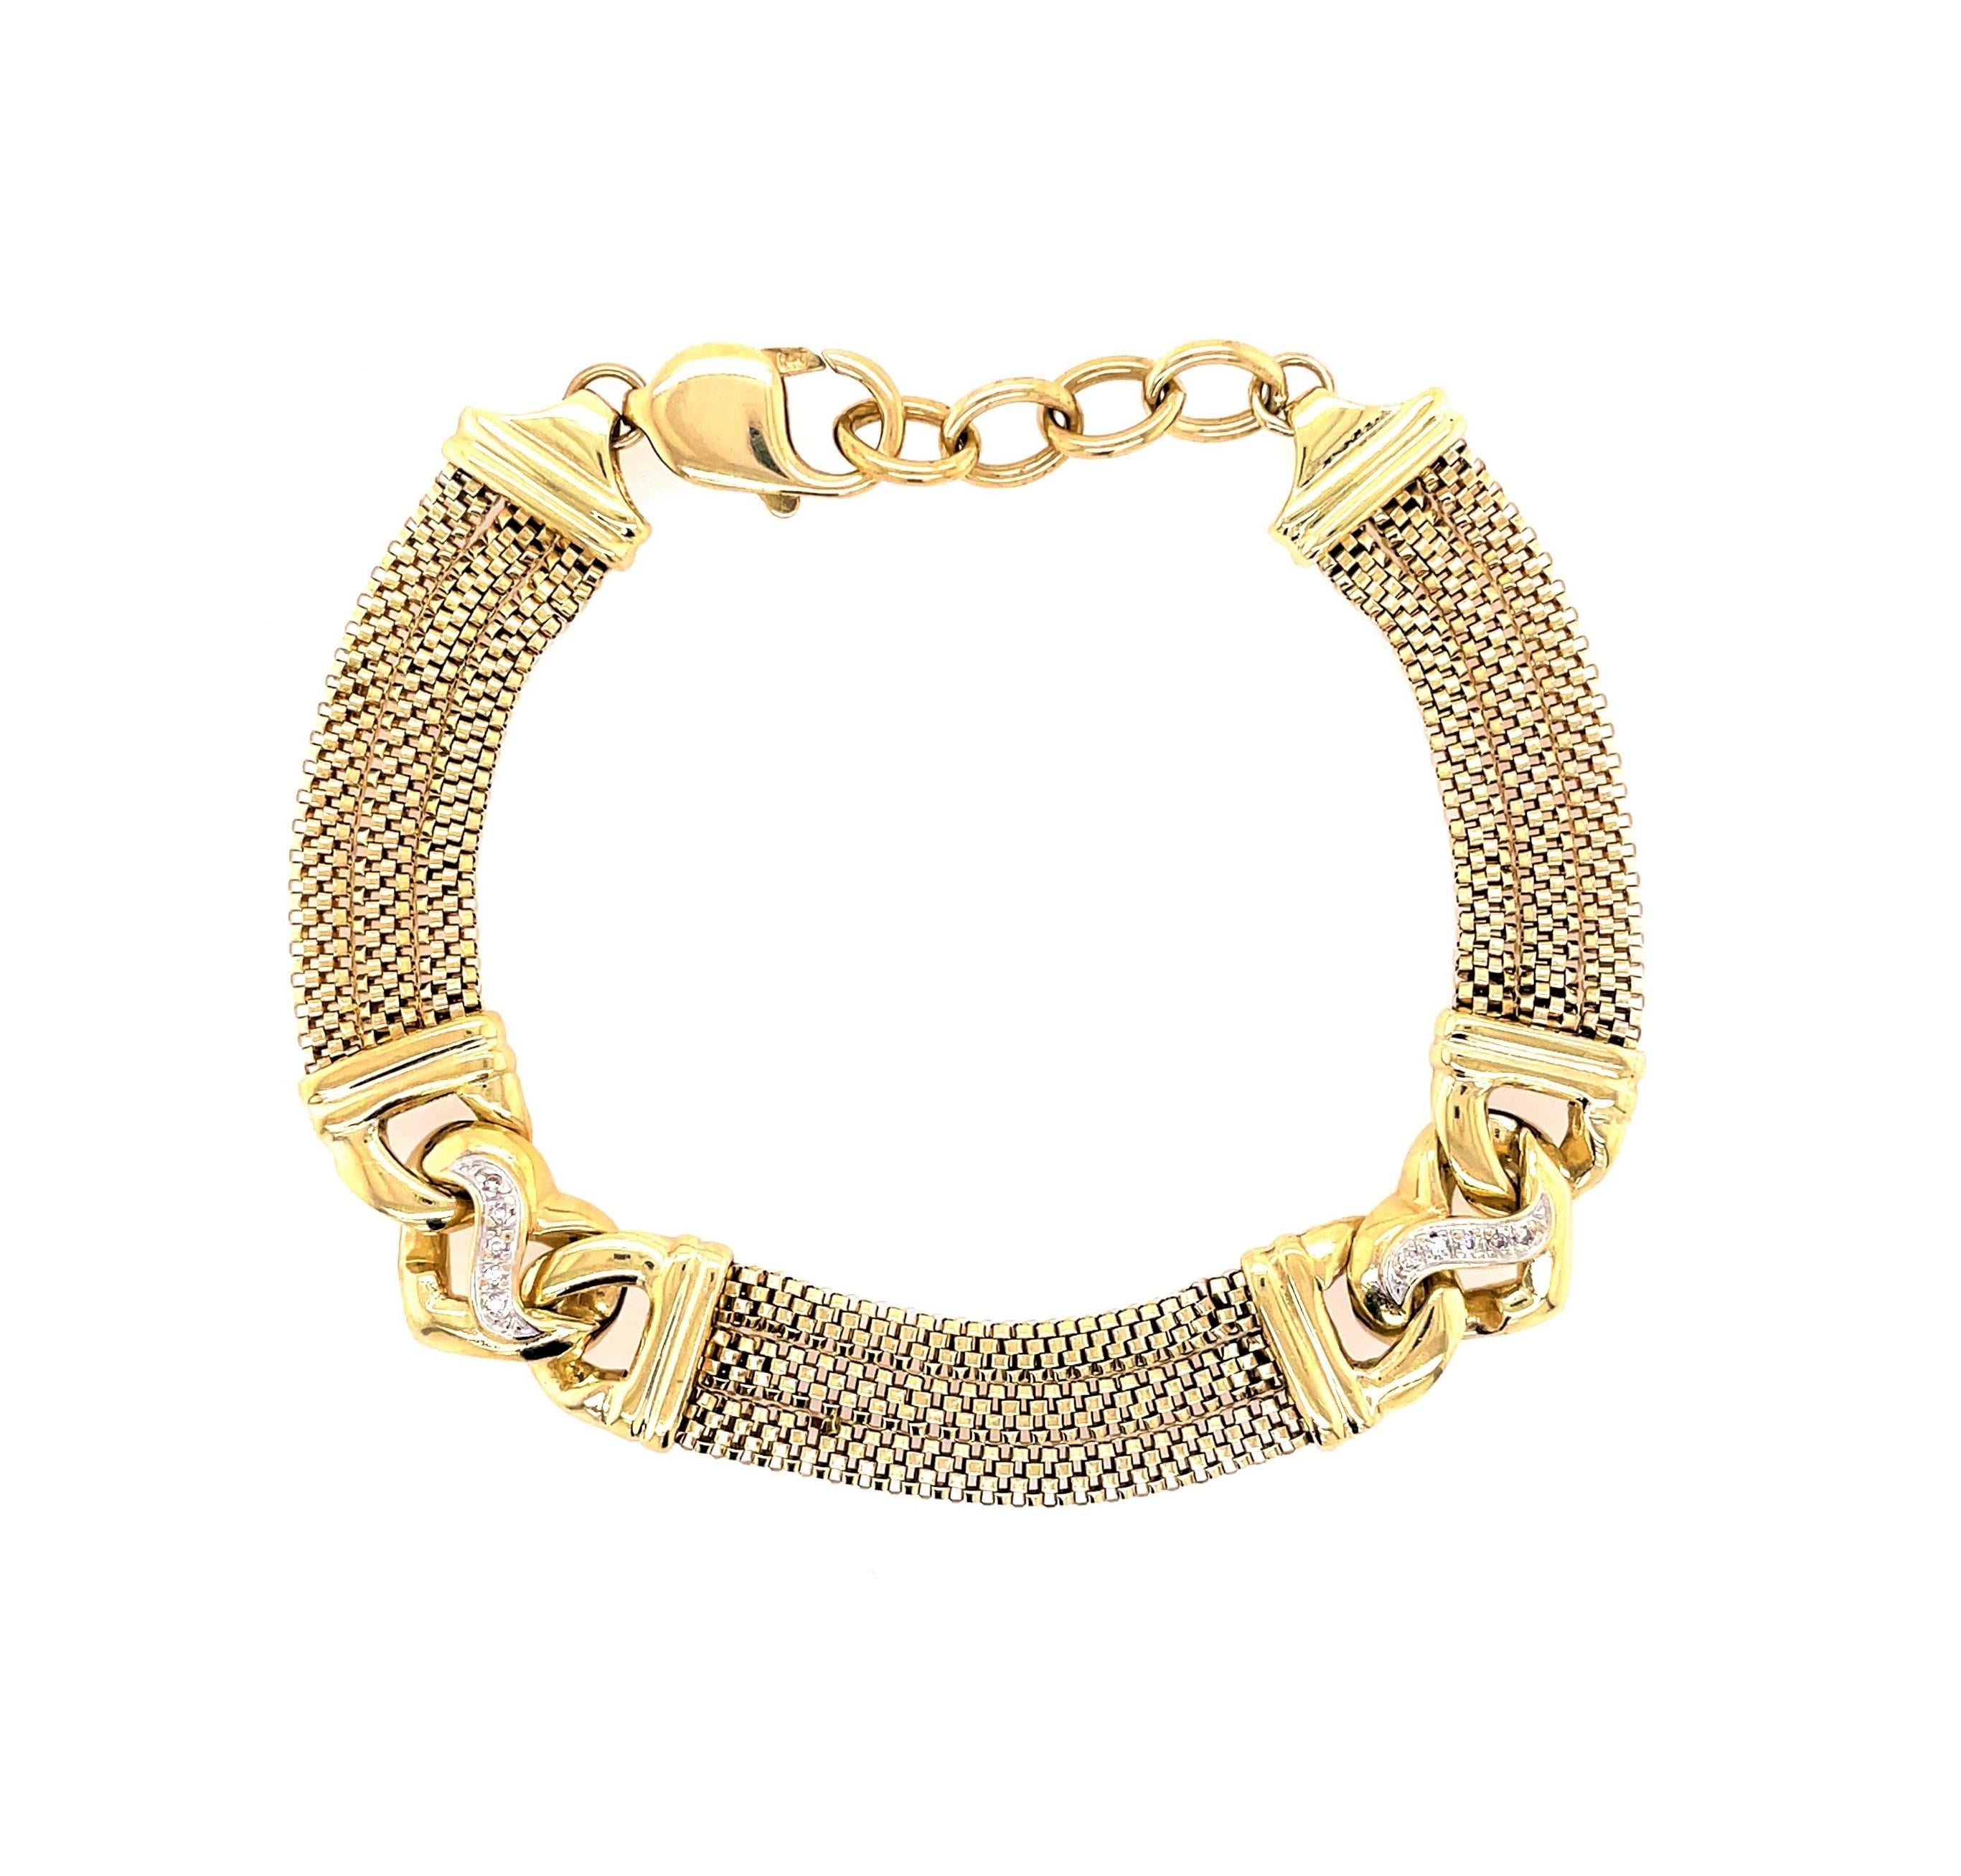 Trois chaînes à mailles en or jaune 14 carats créent cet adorable bracelet relié à deux stations décoratives de cœurs en or élégants, chacune étant accentuée par cinq diamants ronds de 0,01 mm pour un peu plus d'éclat. Idéal pour les gros poignets,